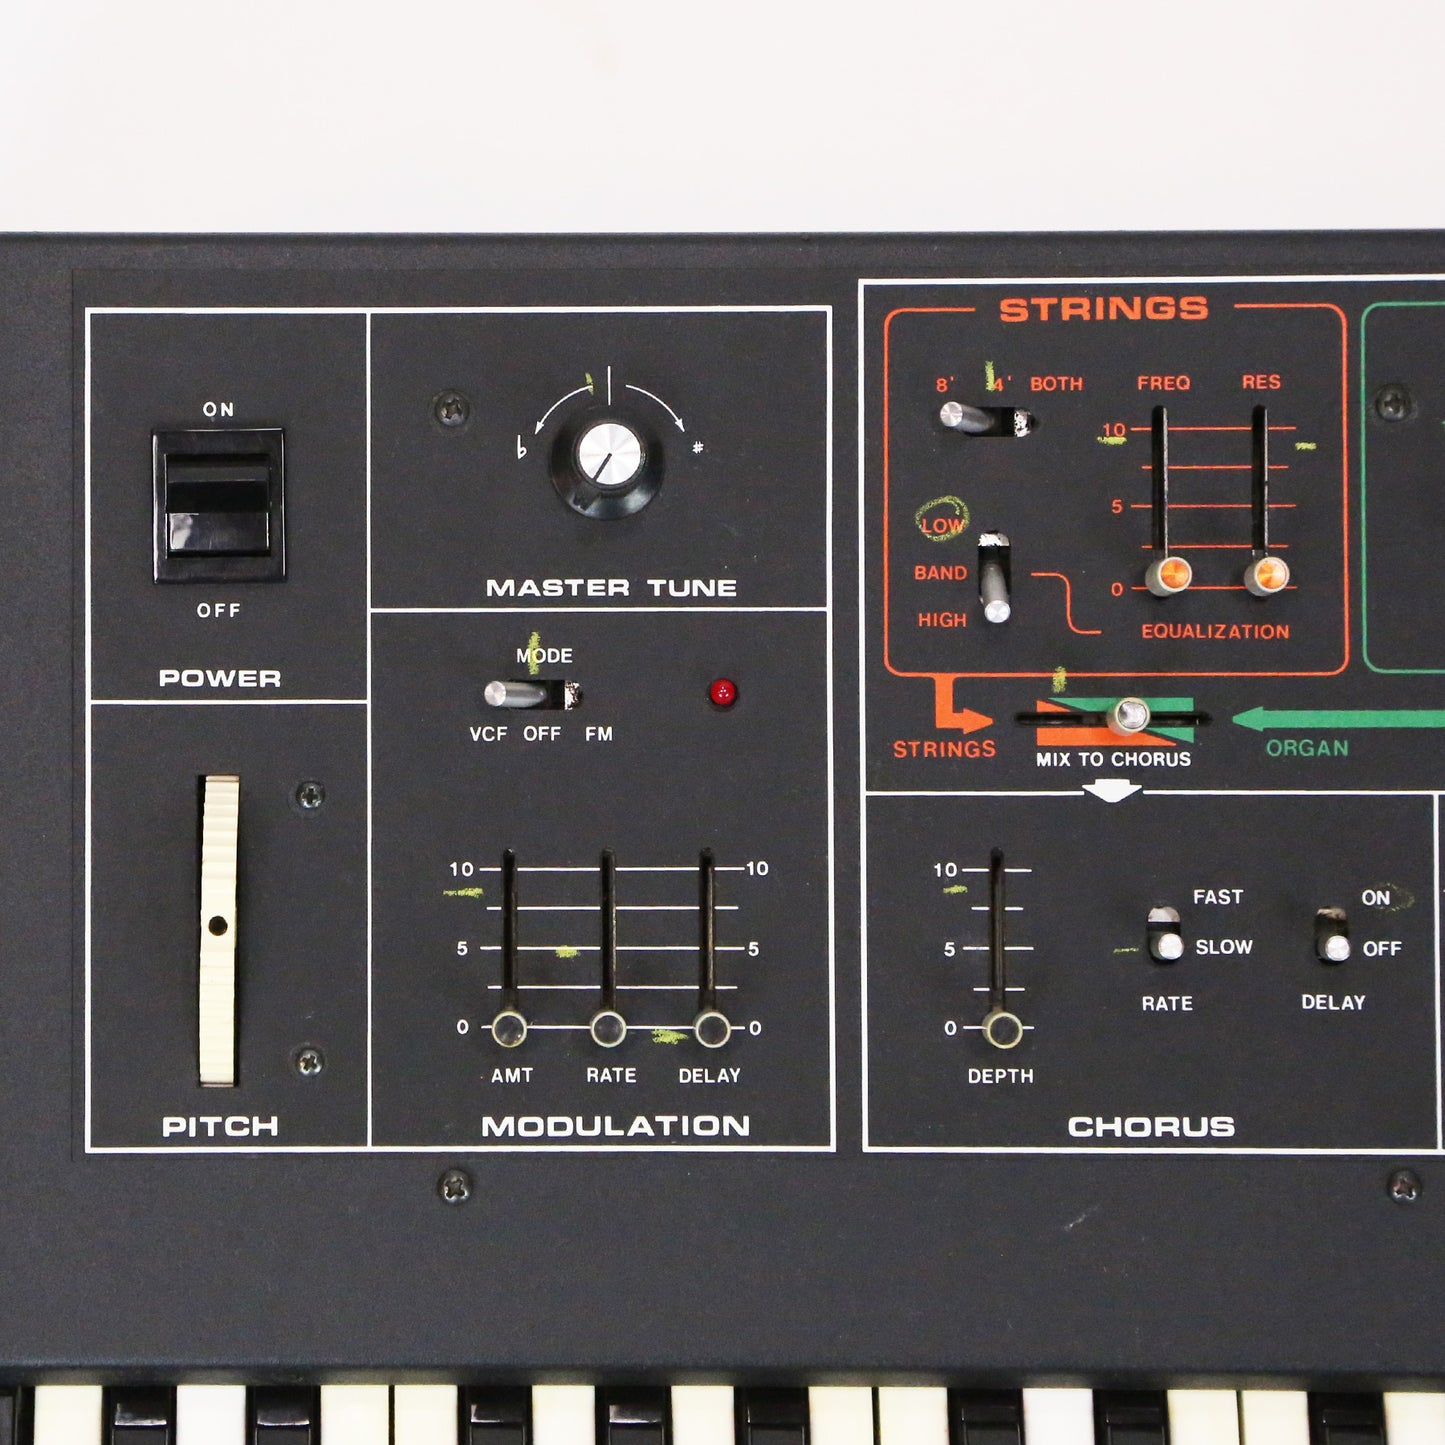 1982 Moog Opus 3 Vintage Analog Synthesizer Keyboard